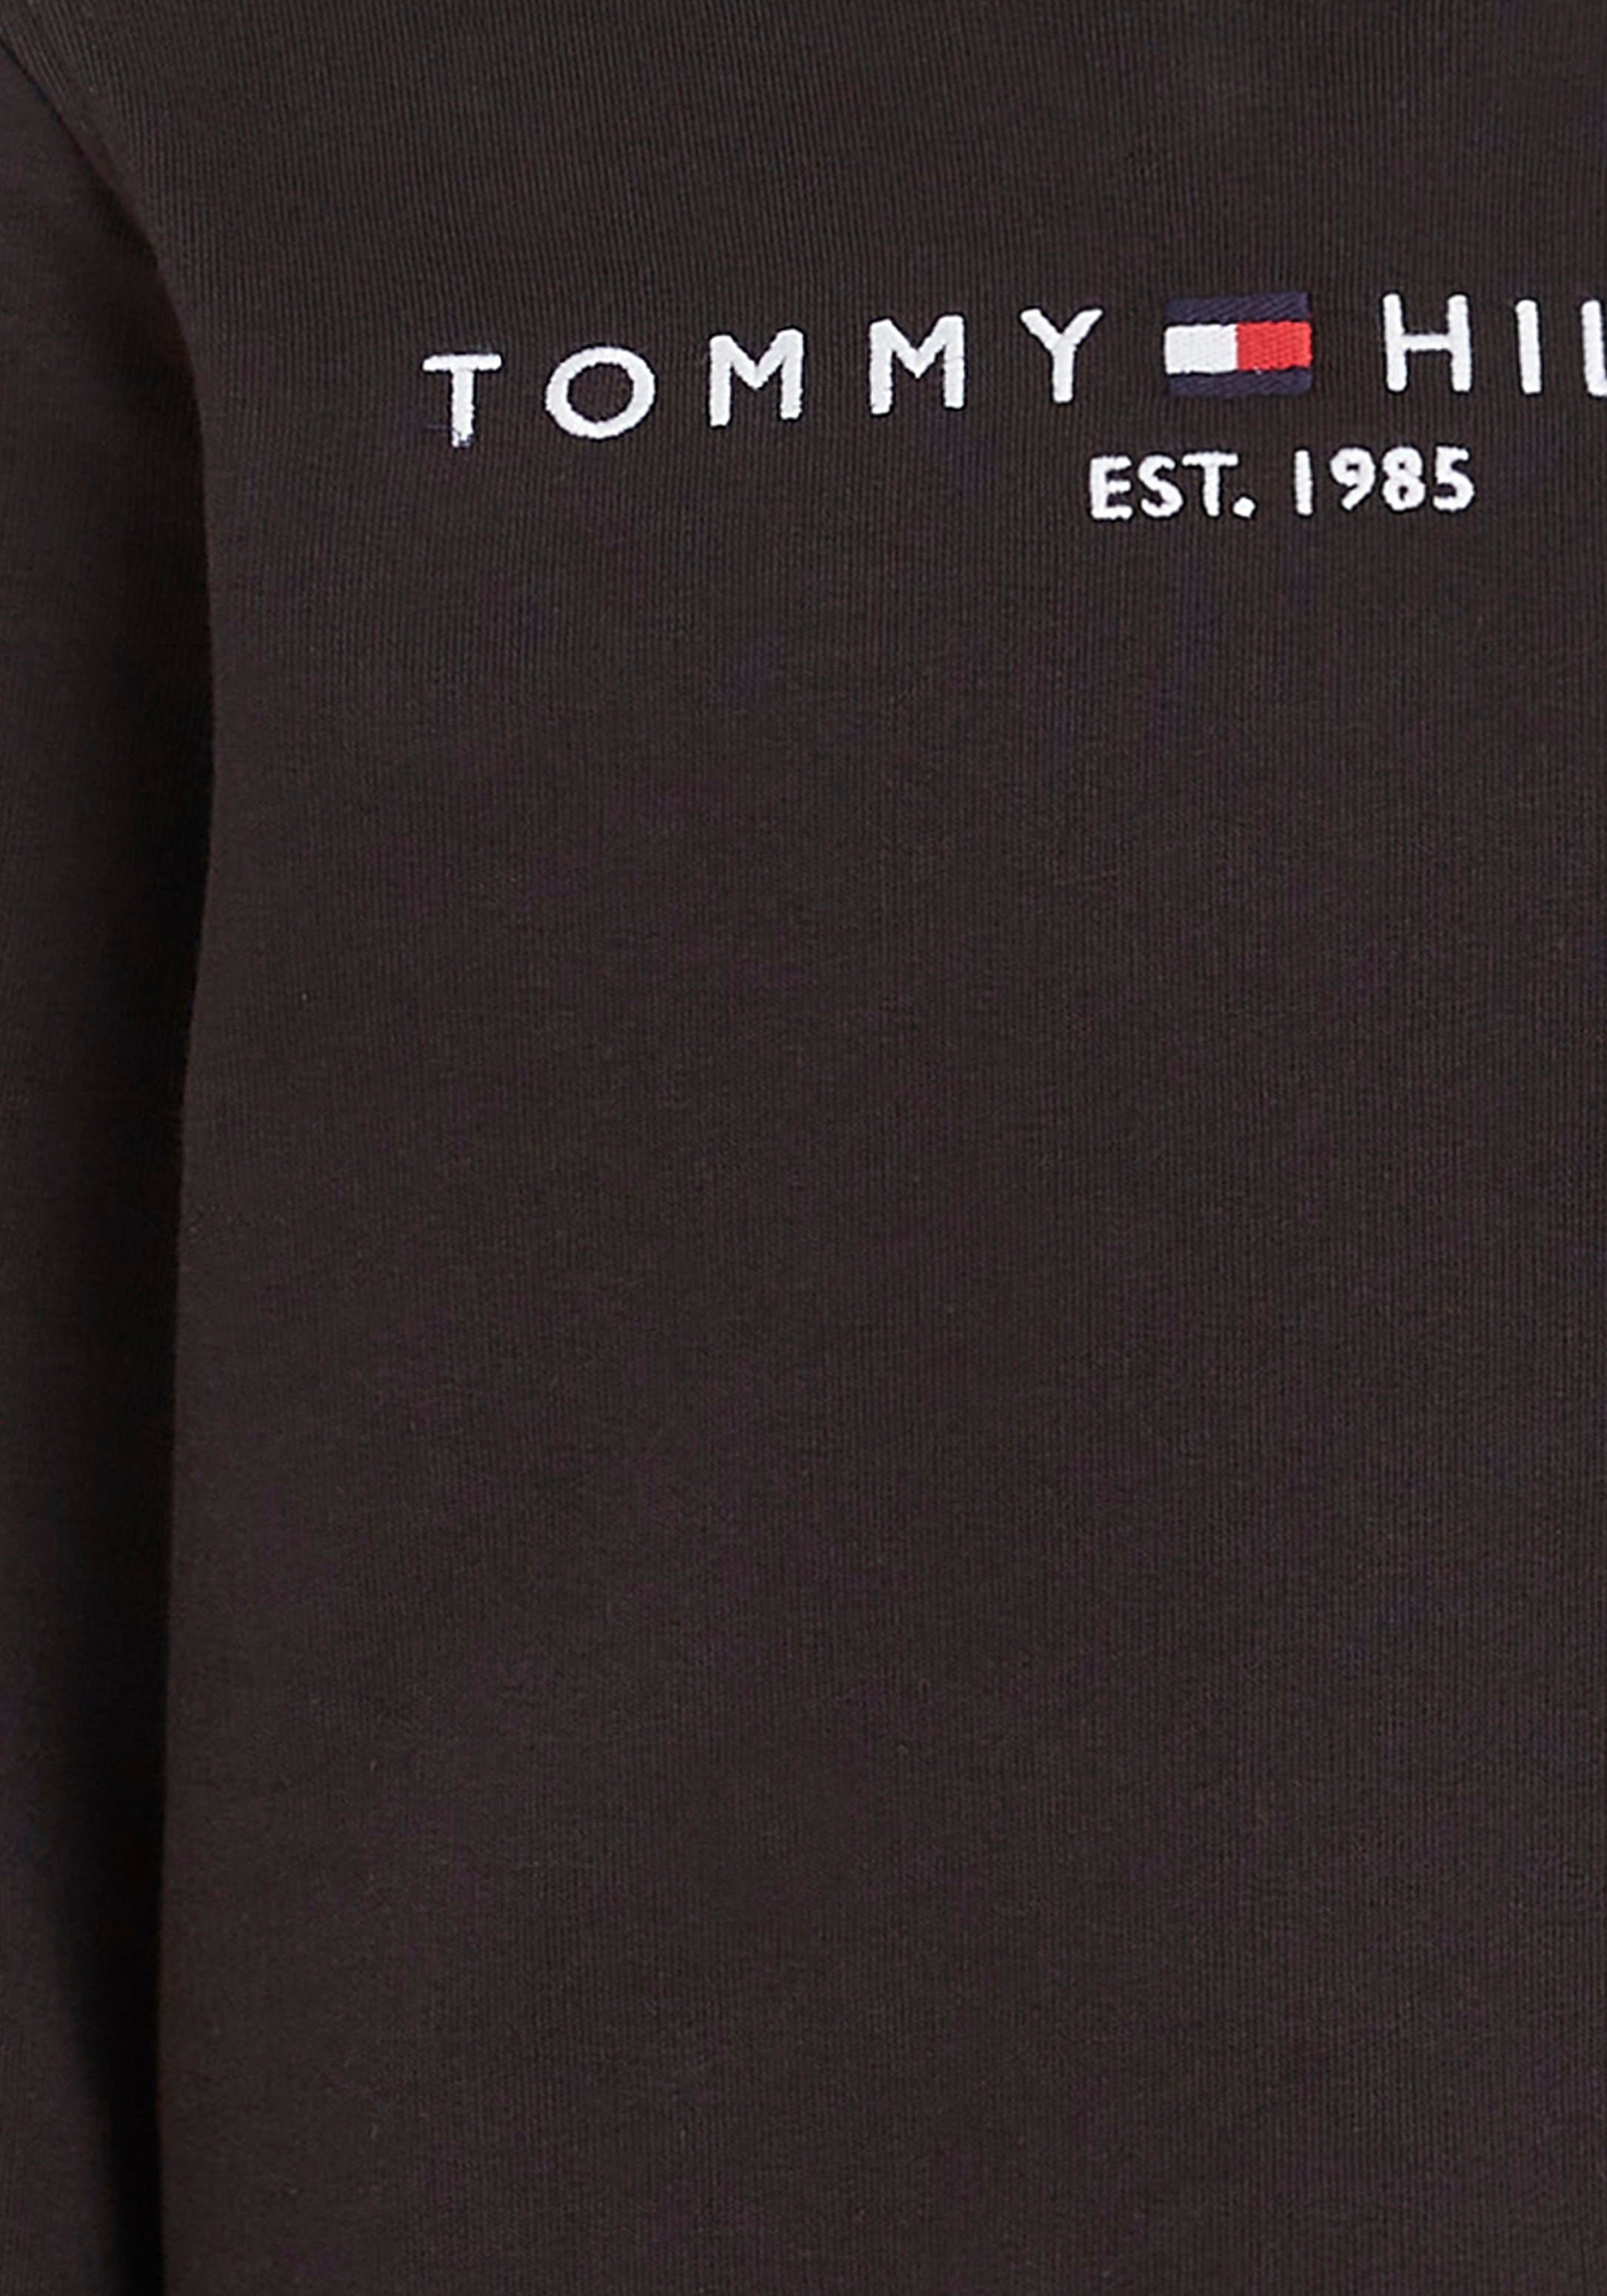 Jungen Hilfiger und ESSENTIAL Mädchen Tommy SWEATSHIRT für Sweatshirt